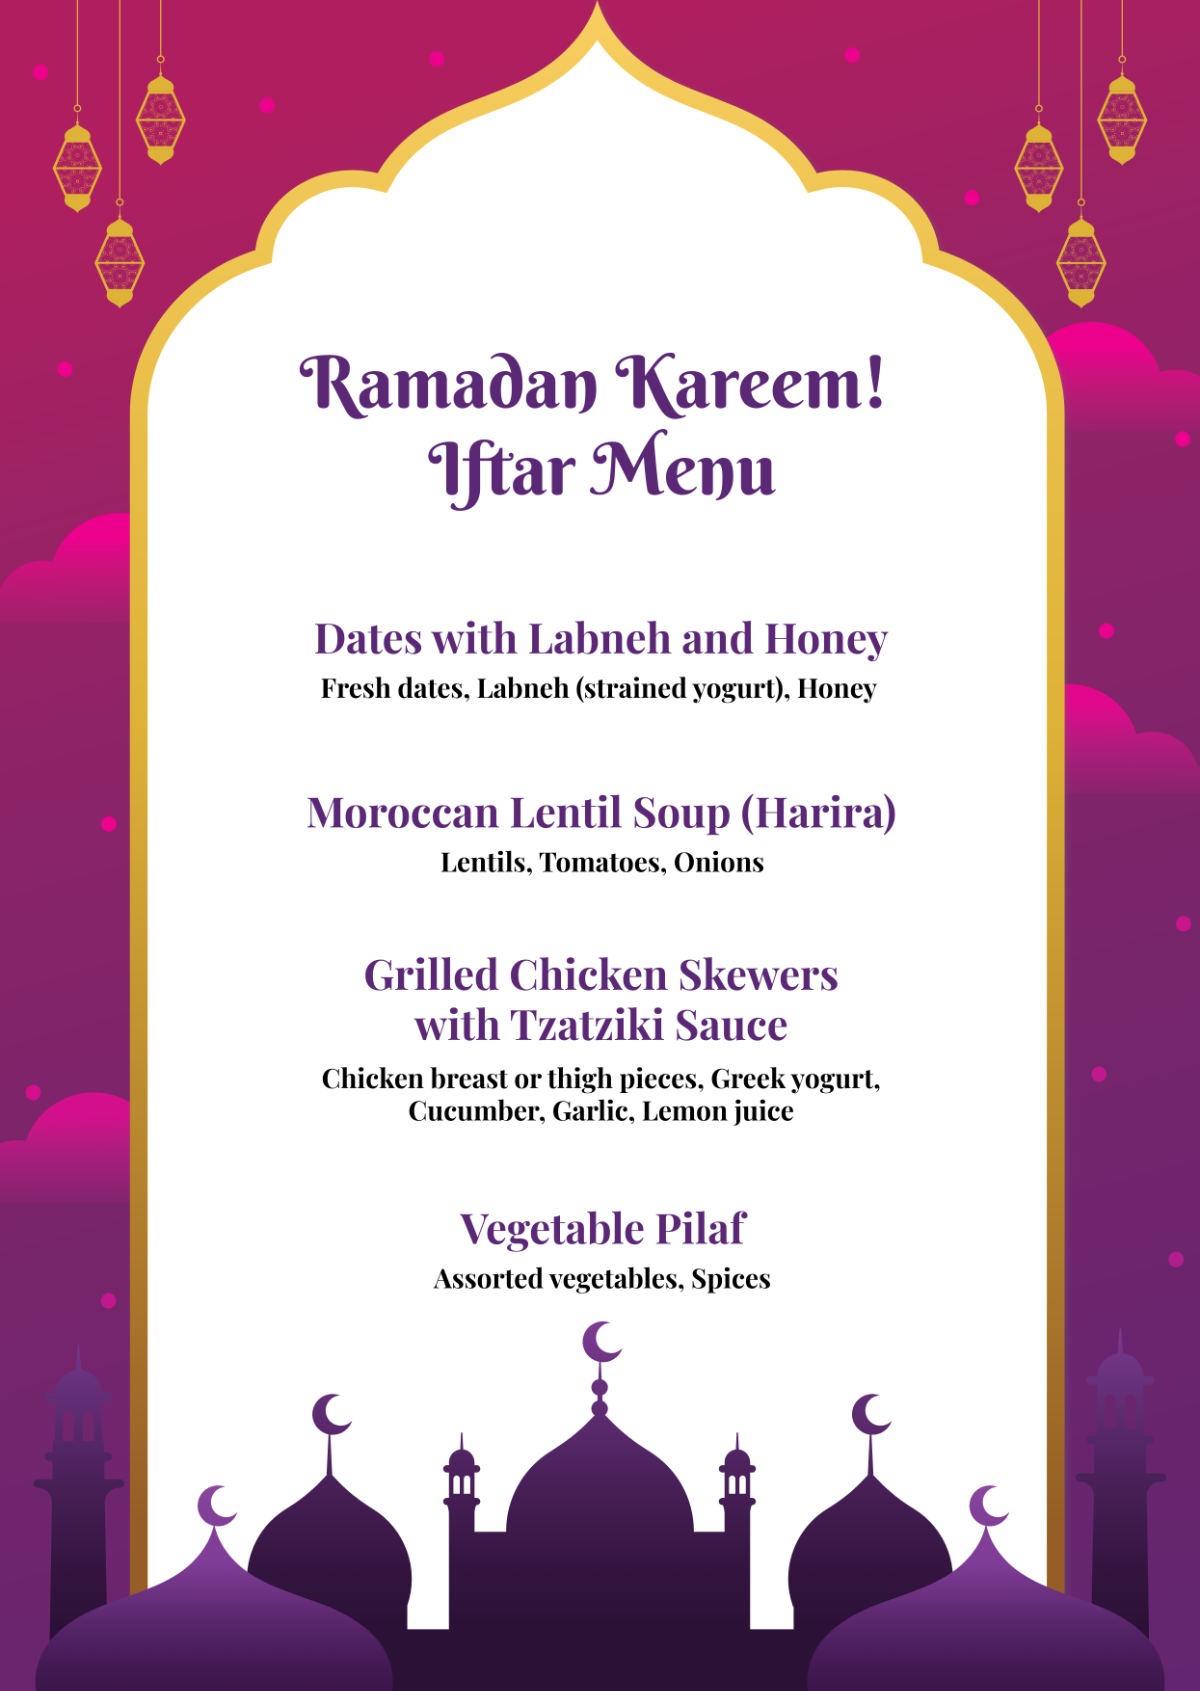 Free Ramadan Kareem Iftar Menu Template